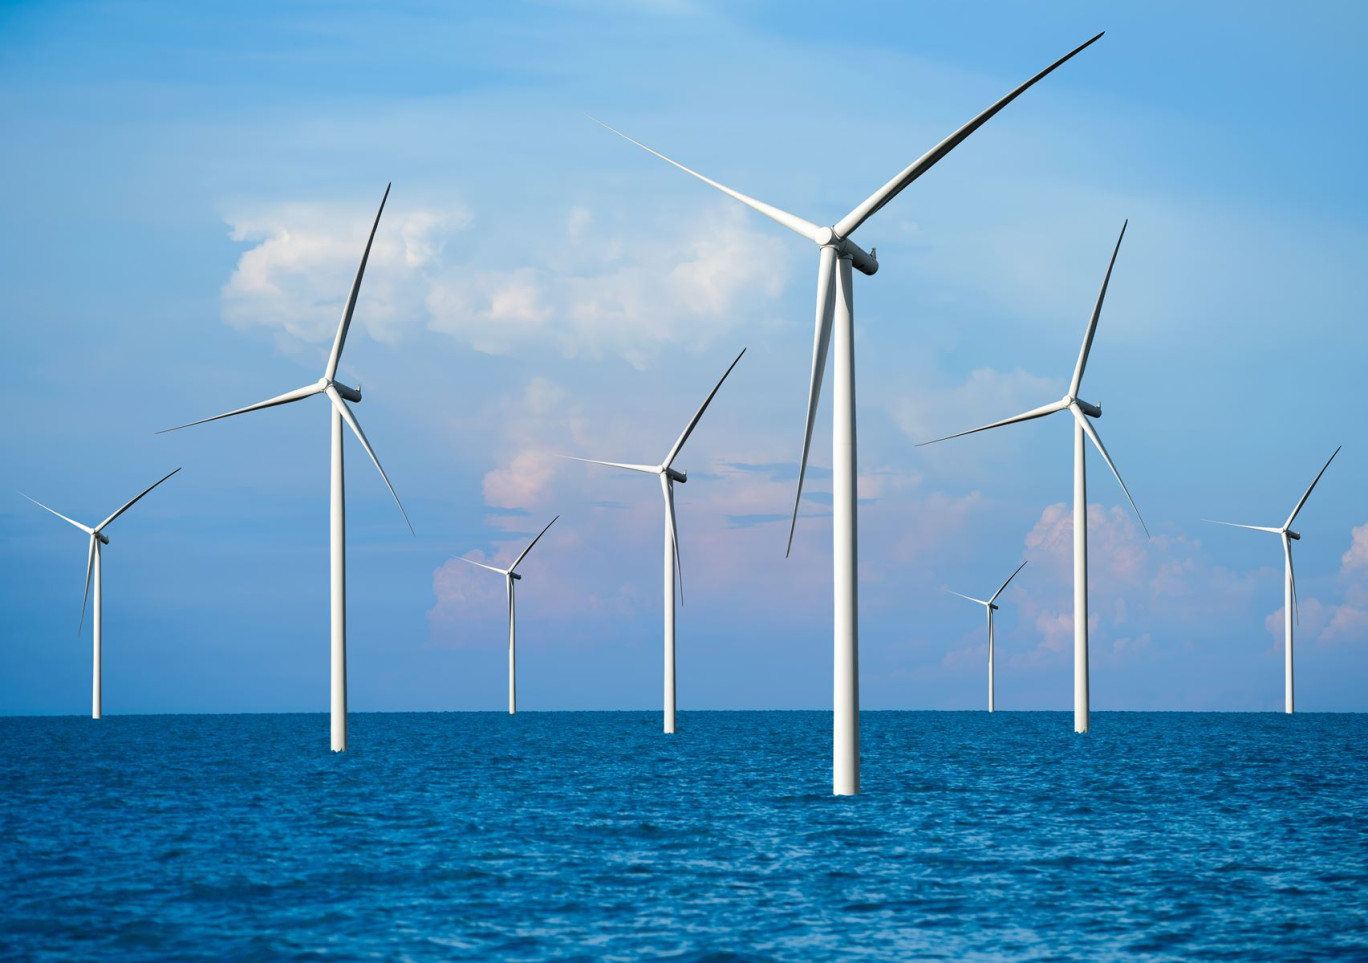 D’ici 2028, un parc éolien off-shore d’une puissance de 600 MW va être installé à une dizaine de kilomètres des côtes de Dunkerque, sur une surface totale de 50 km². © Blue Planet Studio